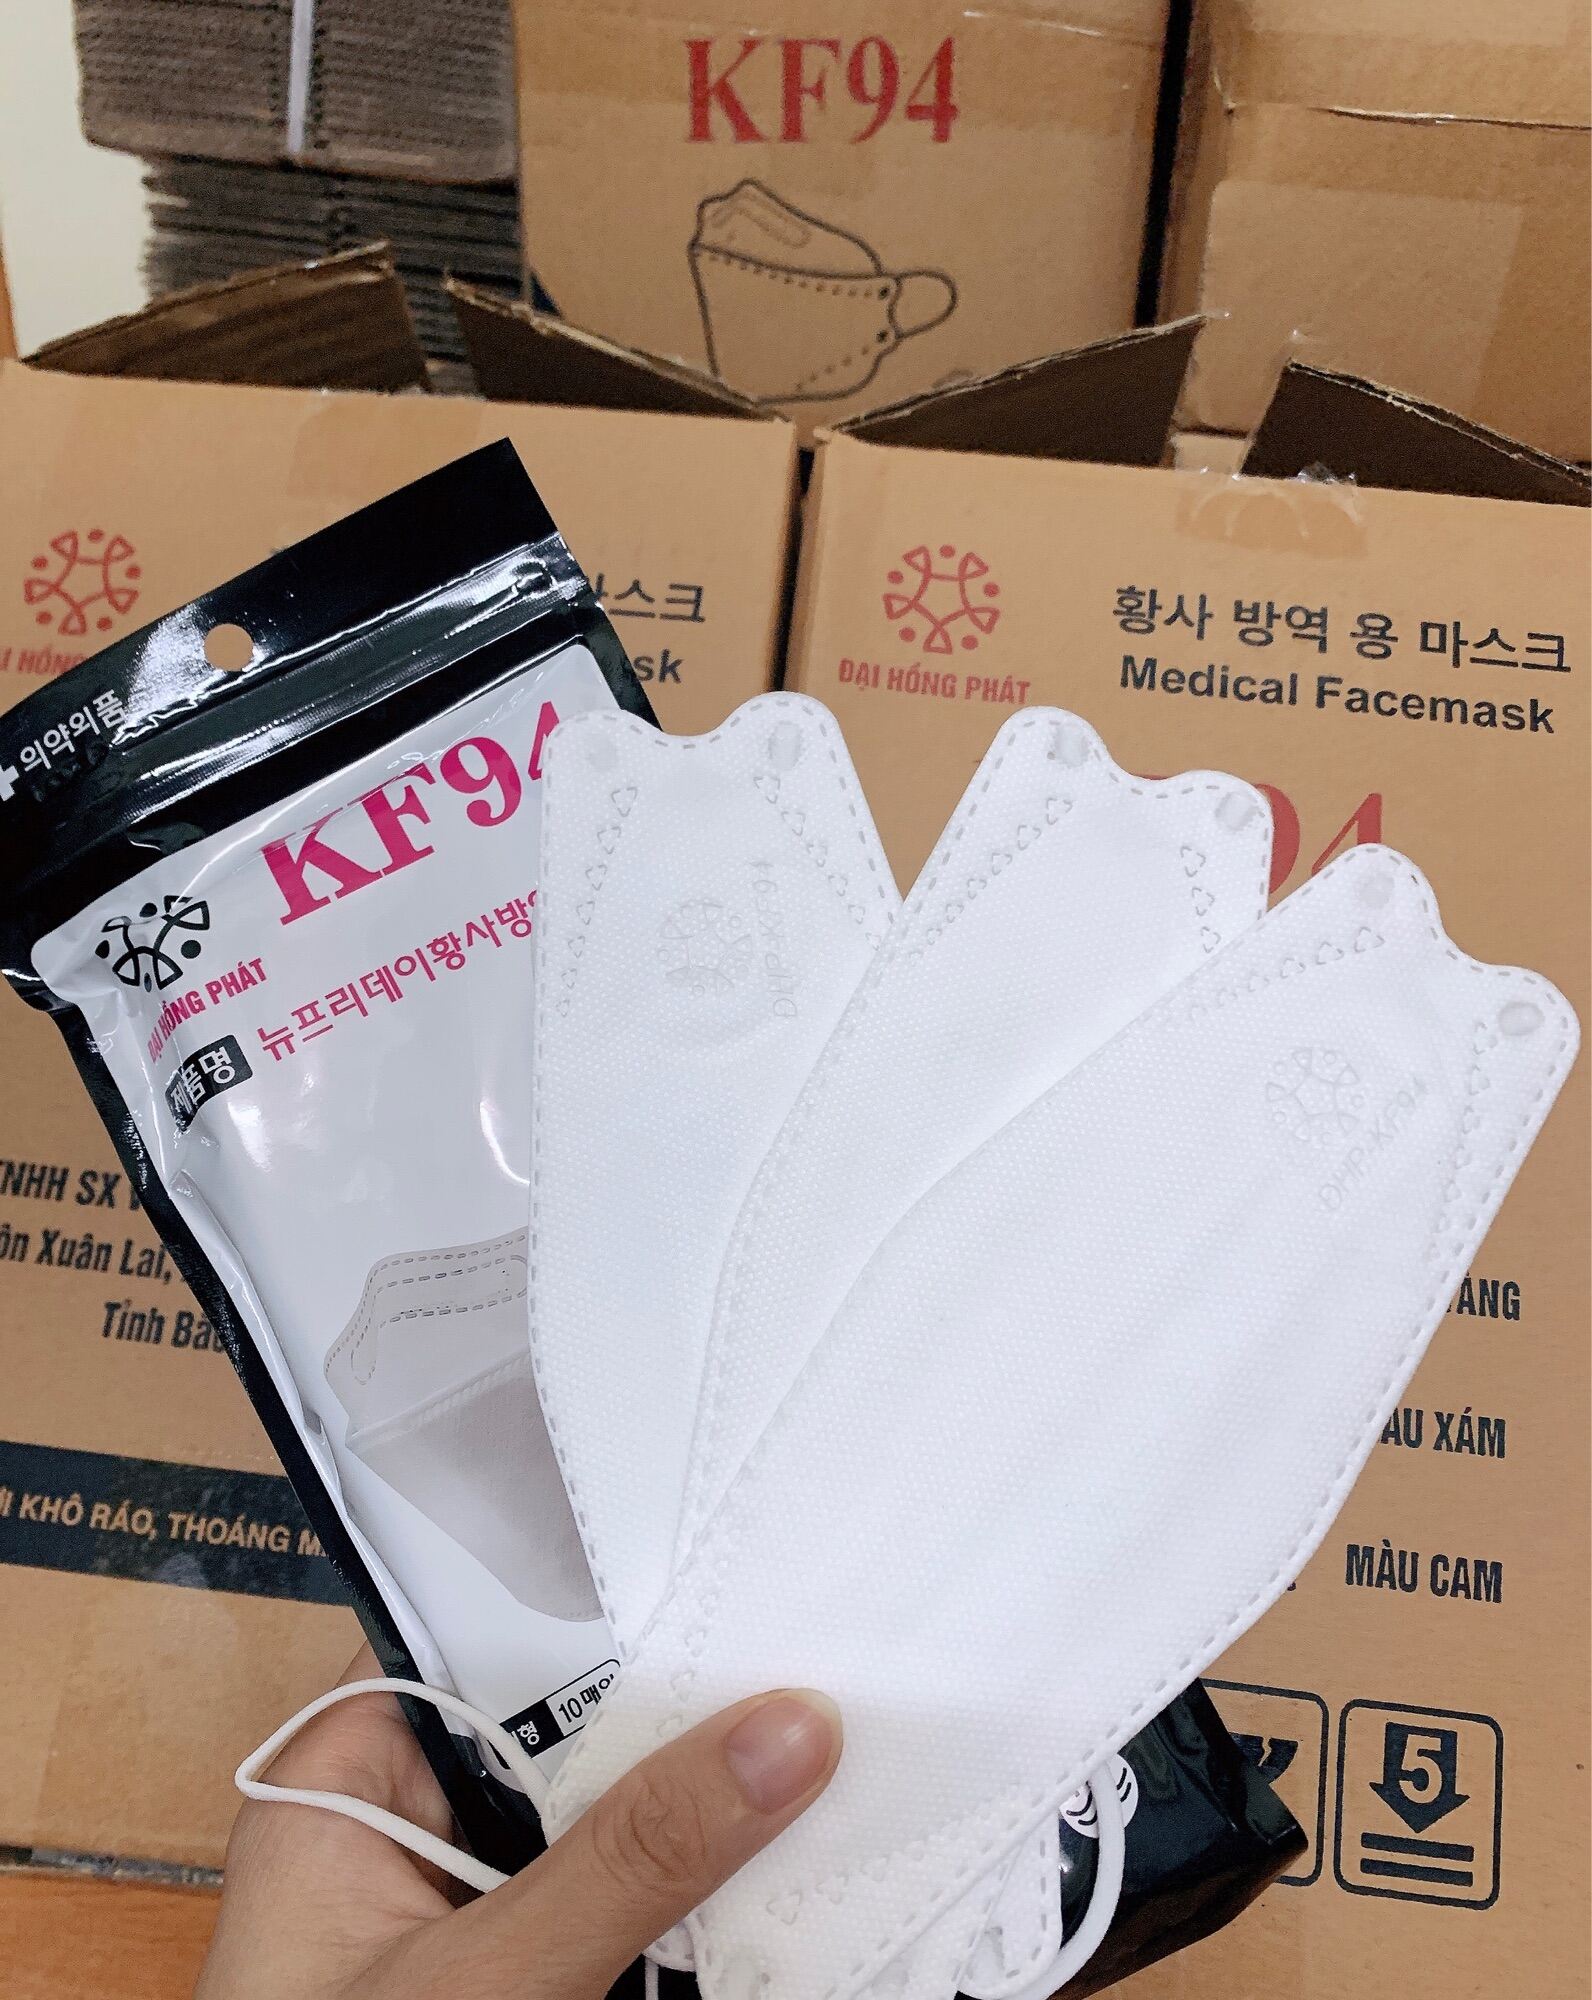 Thùng 300c khẩu trang cá KF94 4D kháng khuẩn 4 lớp Đại Hồng Phát công nghệ Hàn Quốc chống khói bụi vi khuẩn và ngăn ngừa dịch bệnh khẩu trang y tế kf94 màu xanh xám trắng hồng cam vàng